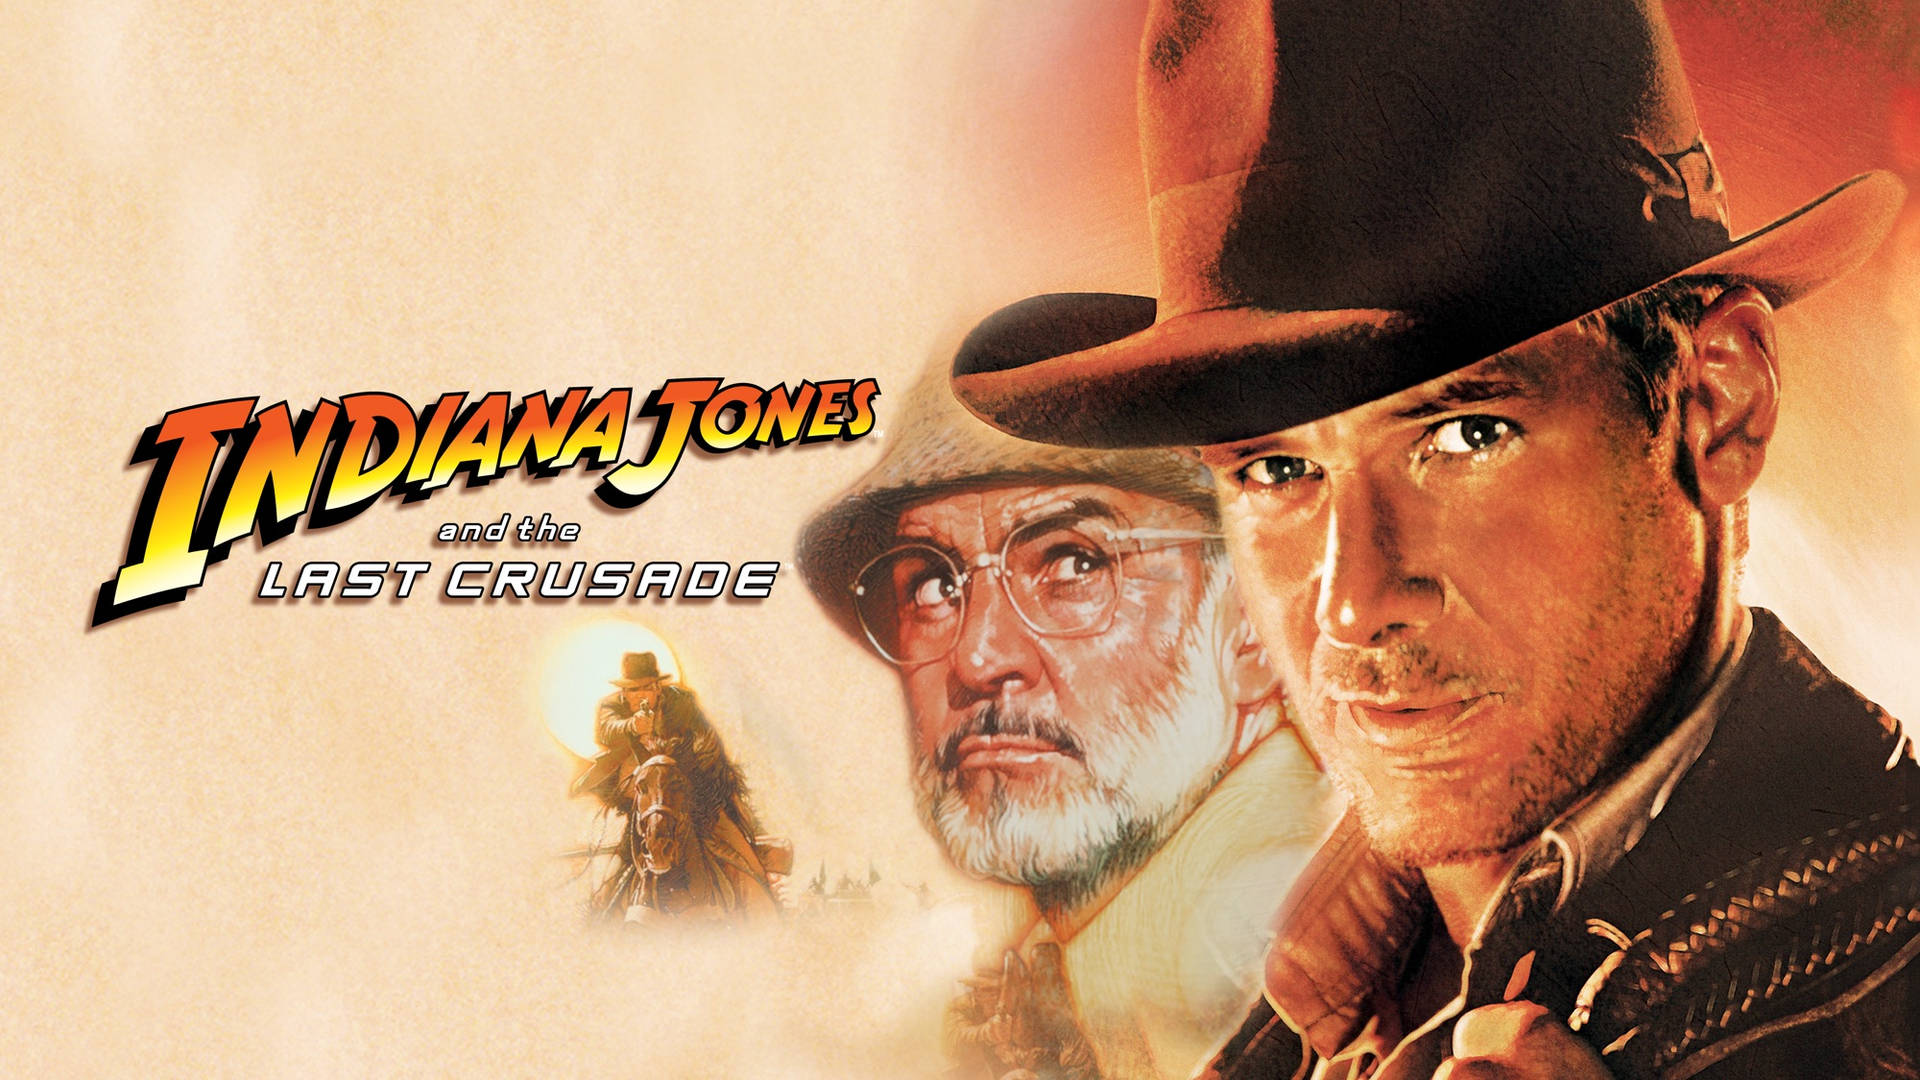 Indiana Jones Background Wallpaper